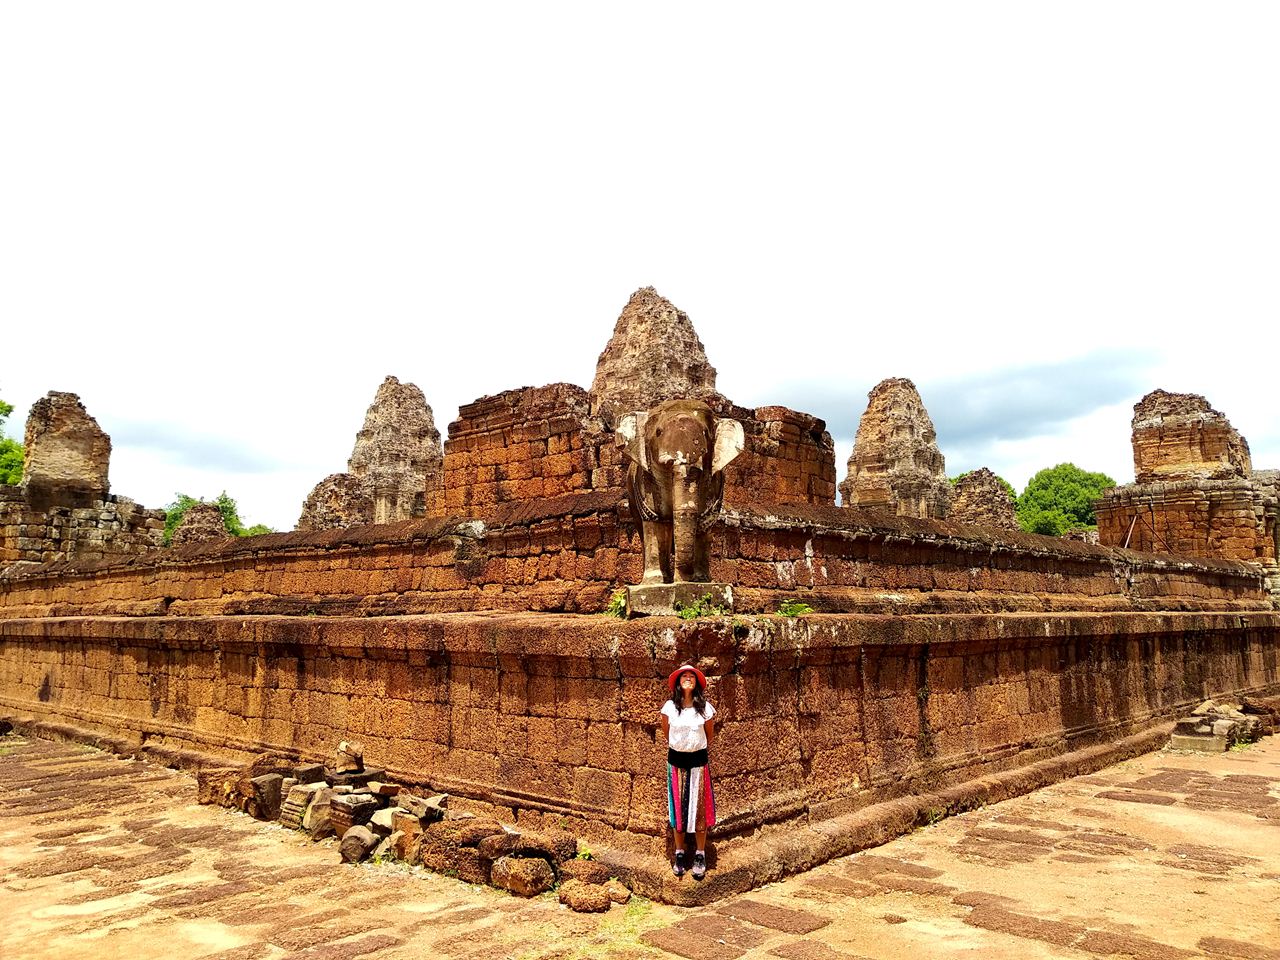 East Mebon temple, Cambodia